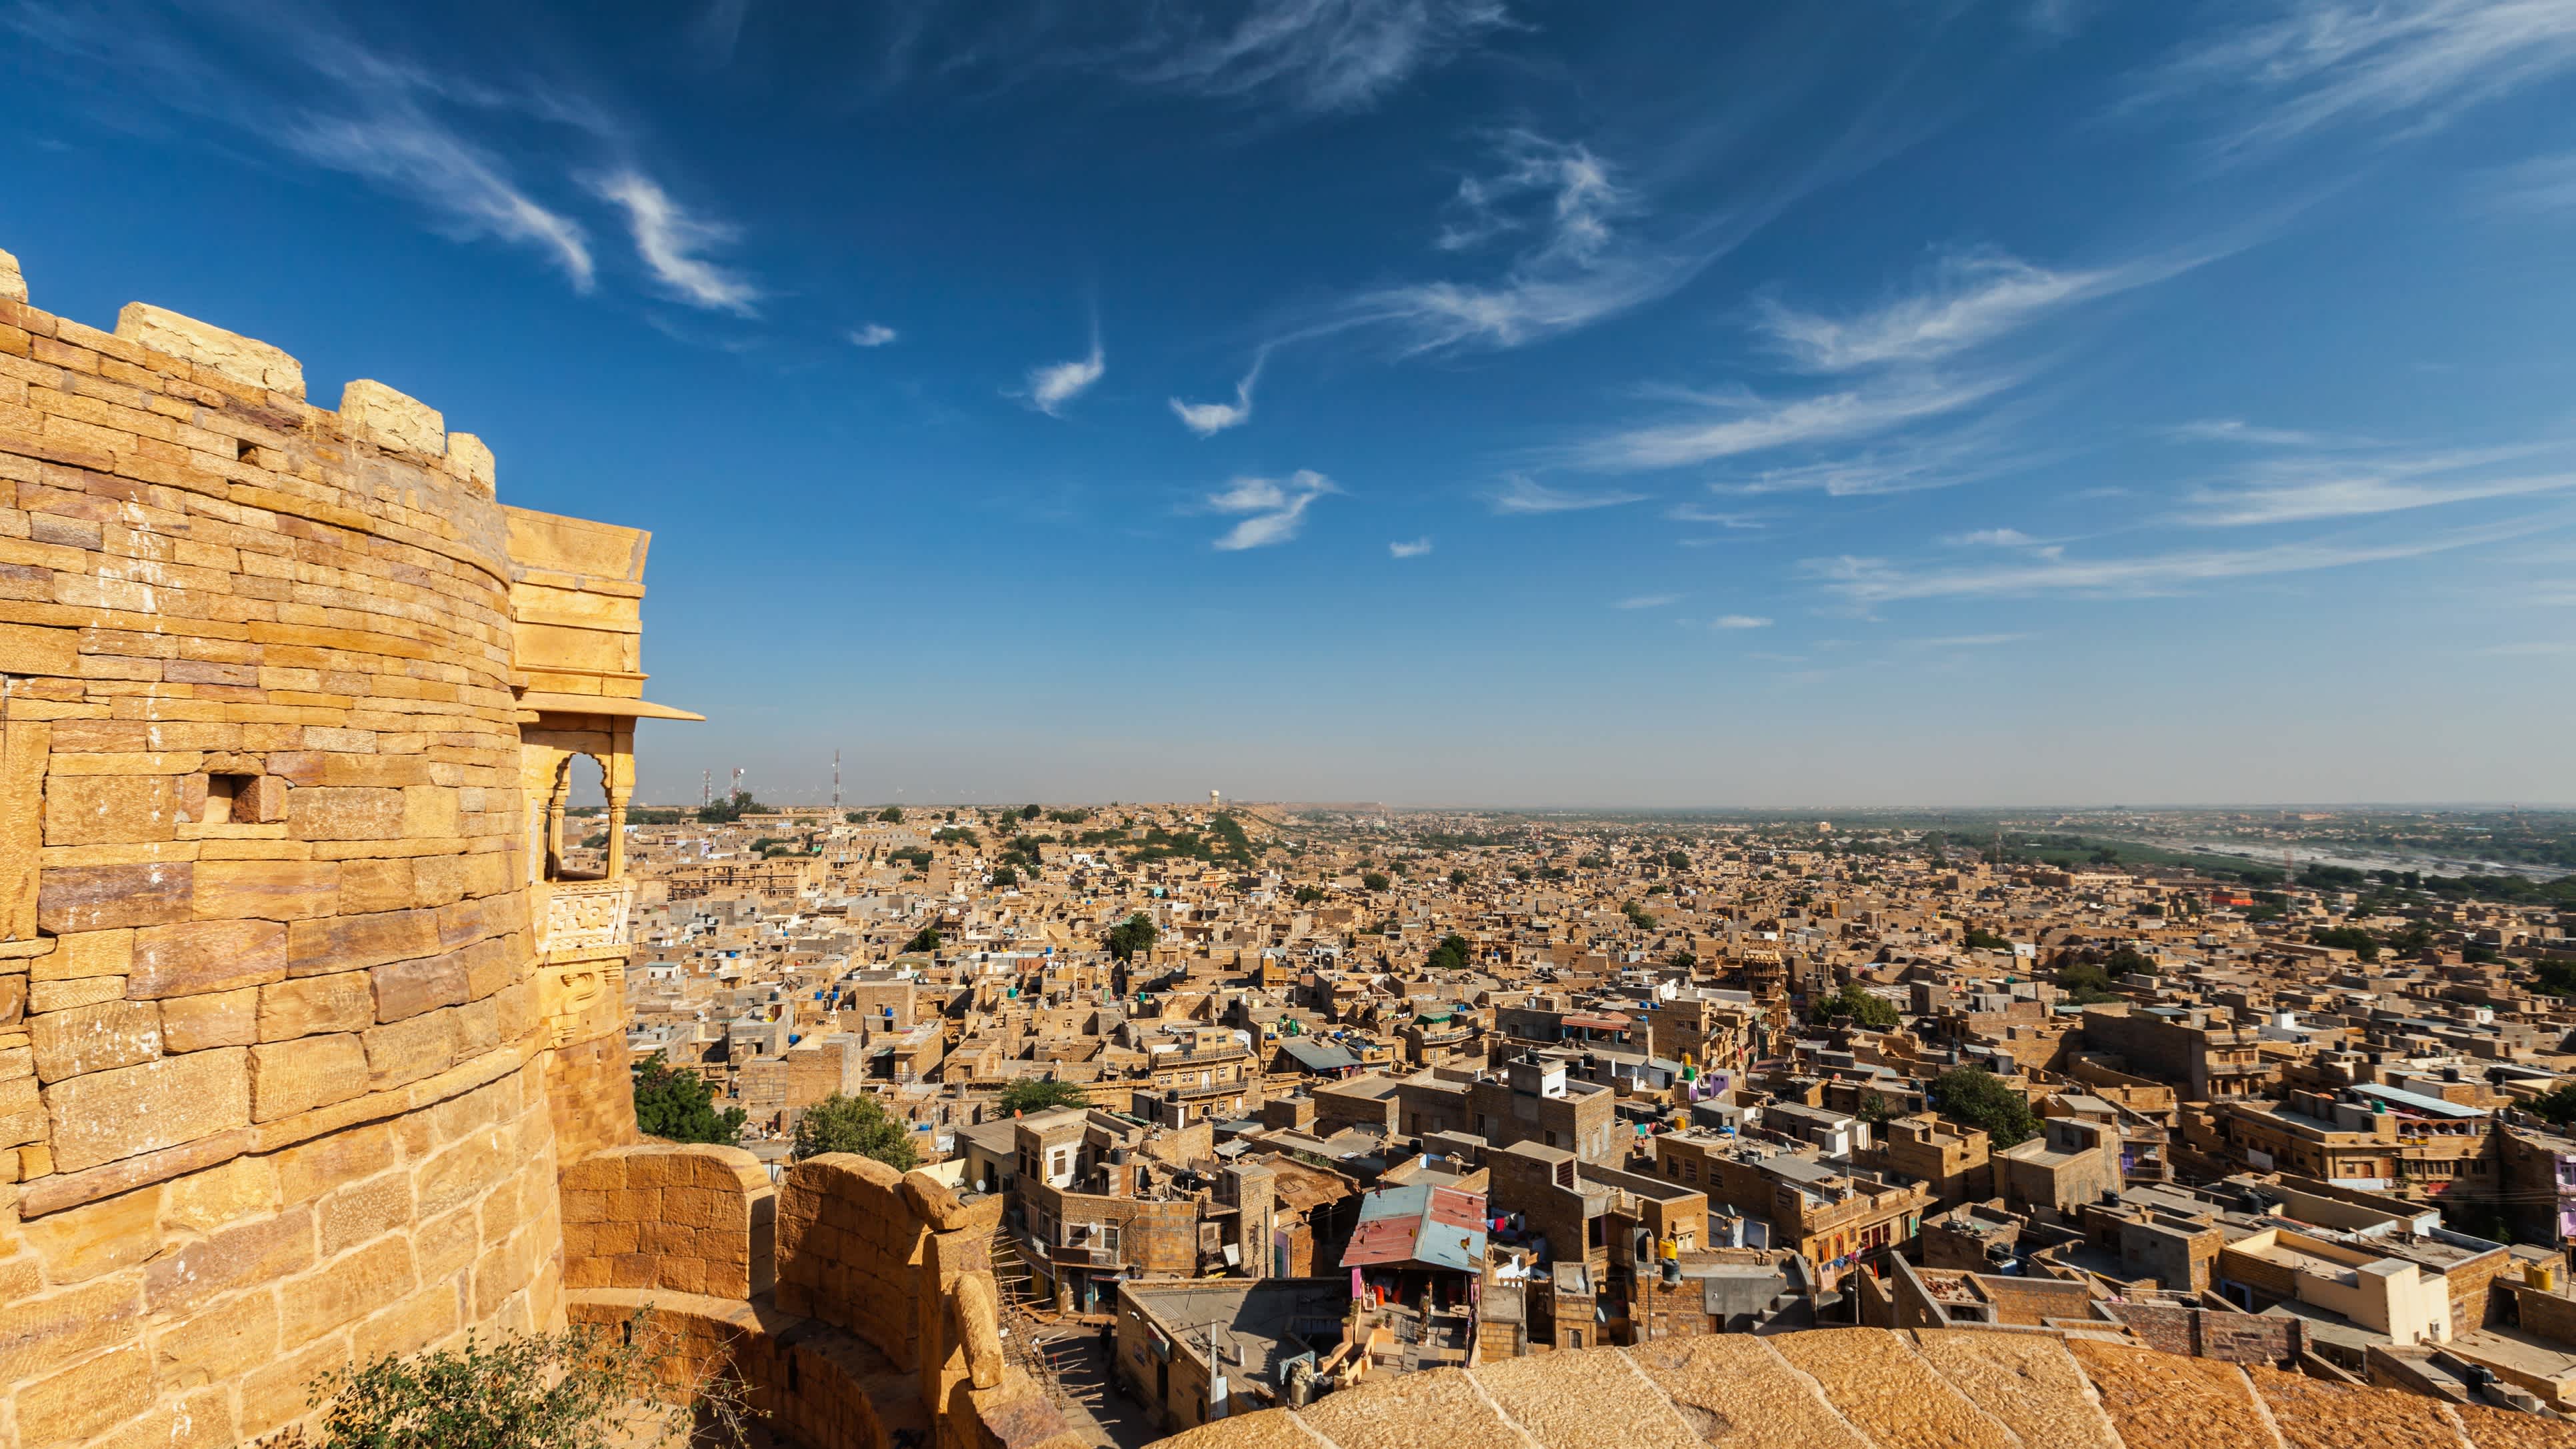 Admirez la vue sur la ville de Jaisalmer, en Inde, depuis son fort